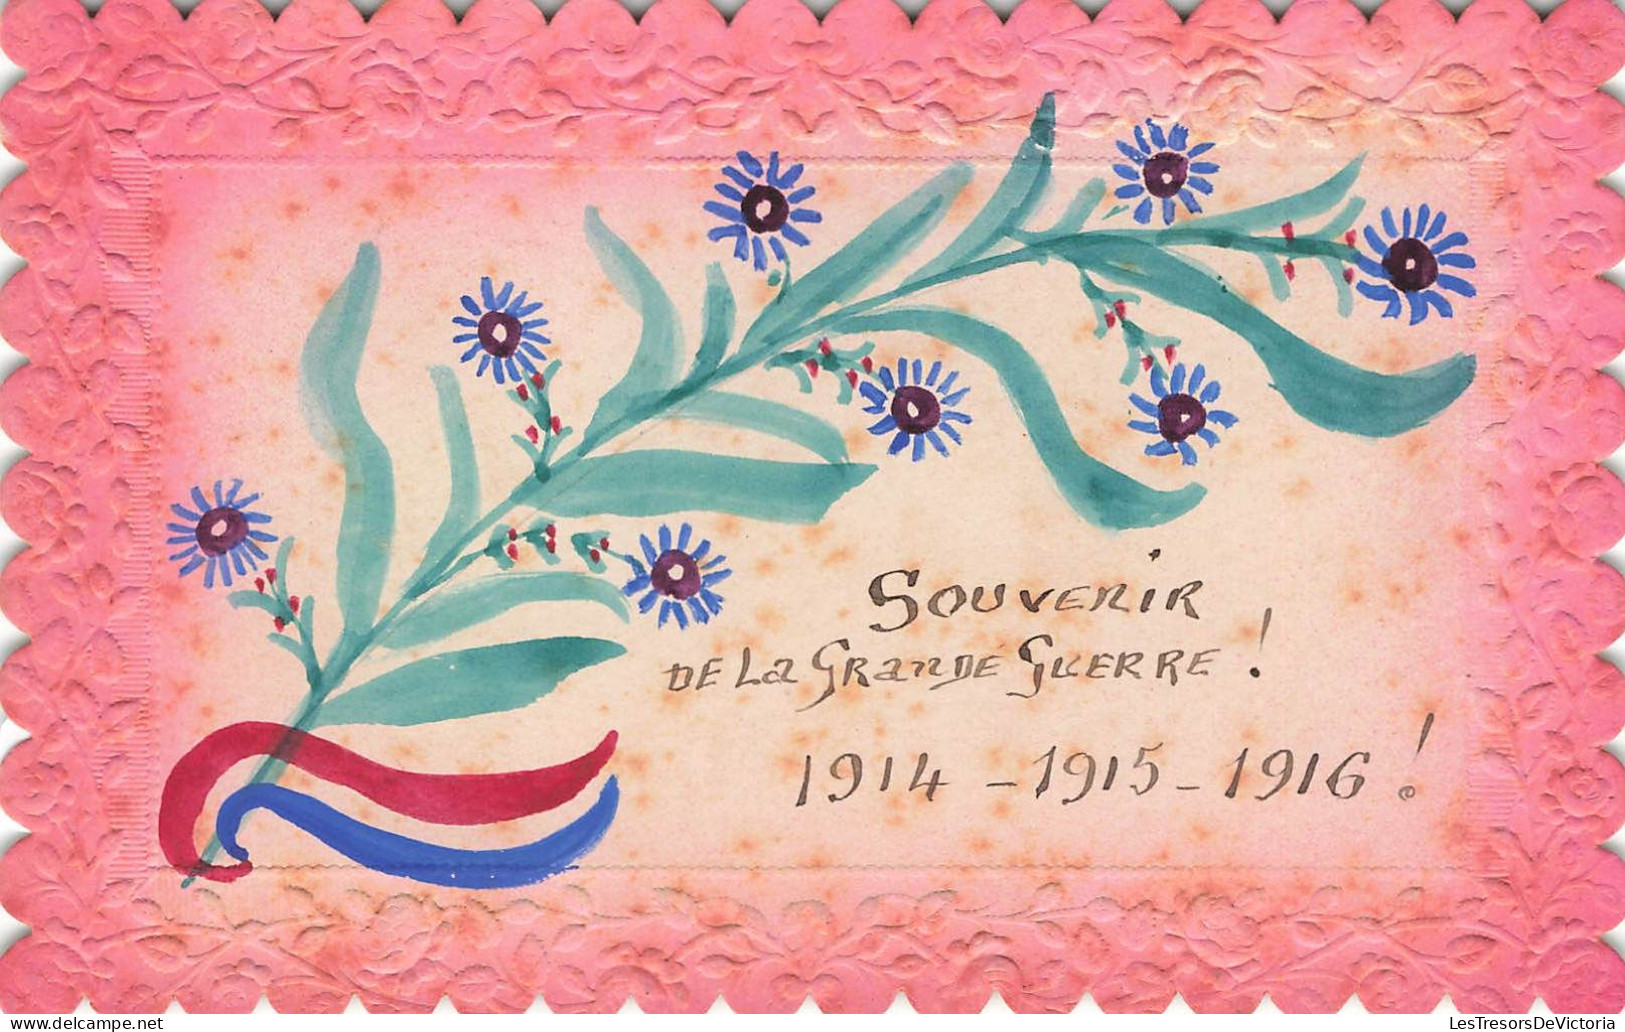 SOUVENIR DE - Souvenir De La Grande Guerre! 1914 - 1915 - 1916 - Colorisé - Carte Postale Ancienne - Greetings From...